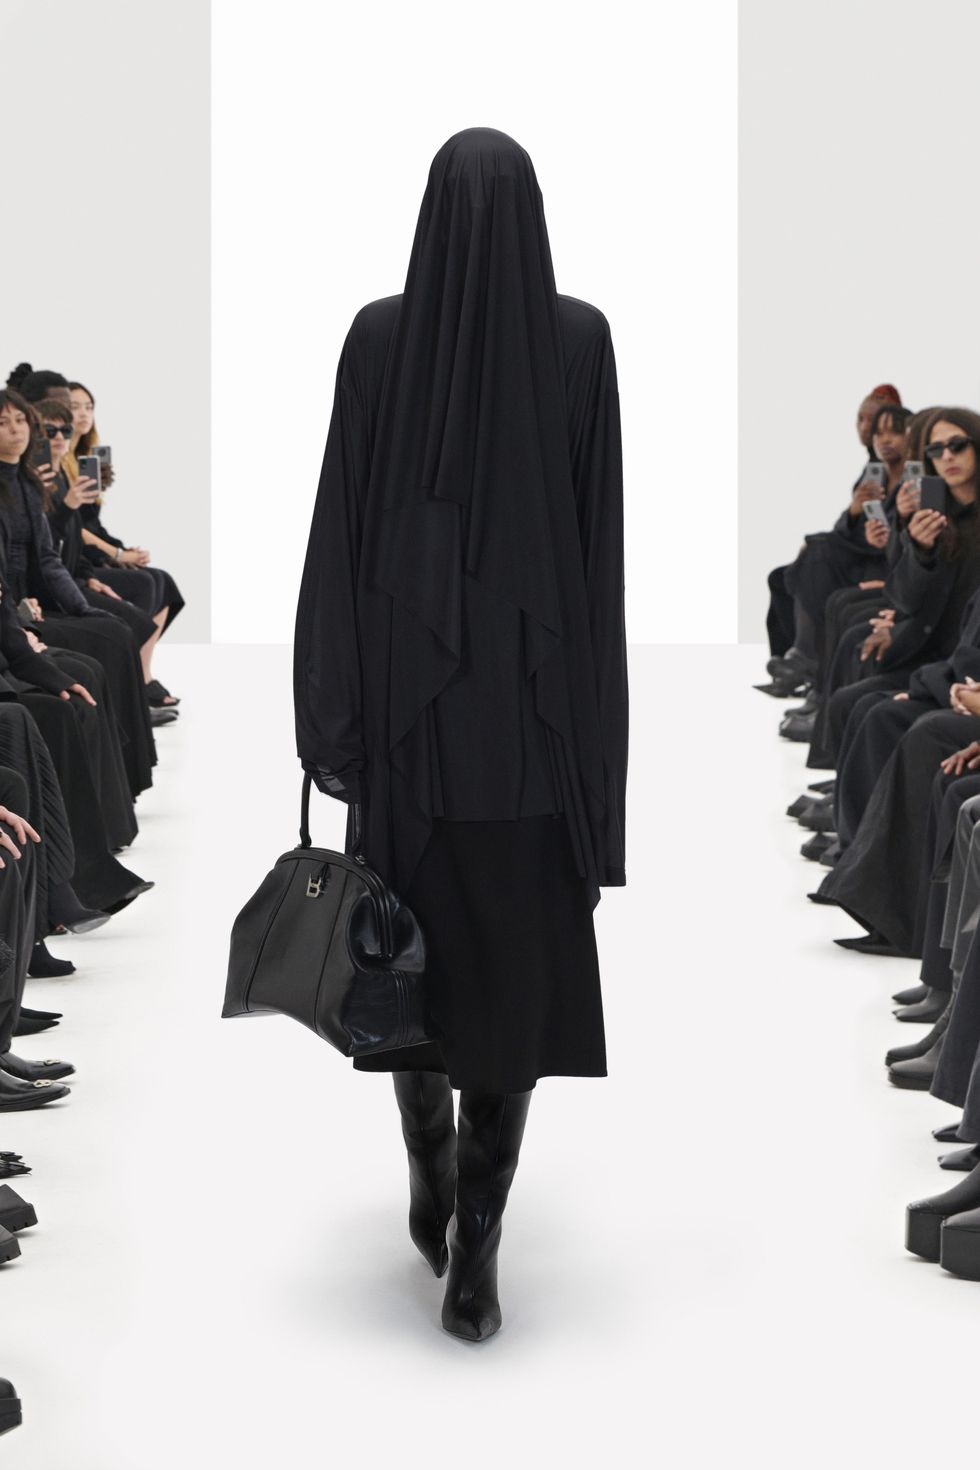 Balenciaga đưa “người mẫu ảo” lên sàn catwalk - 1